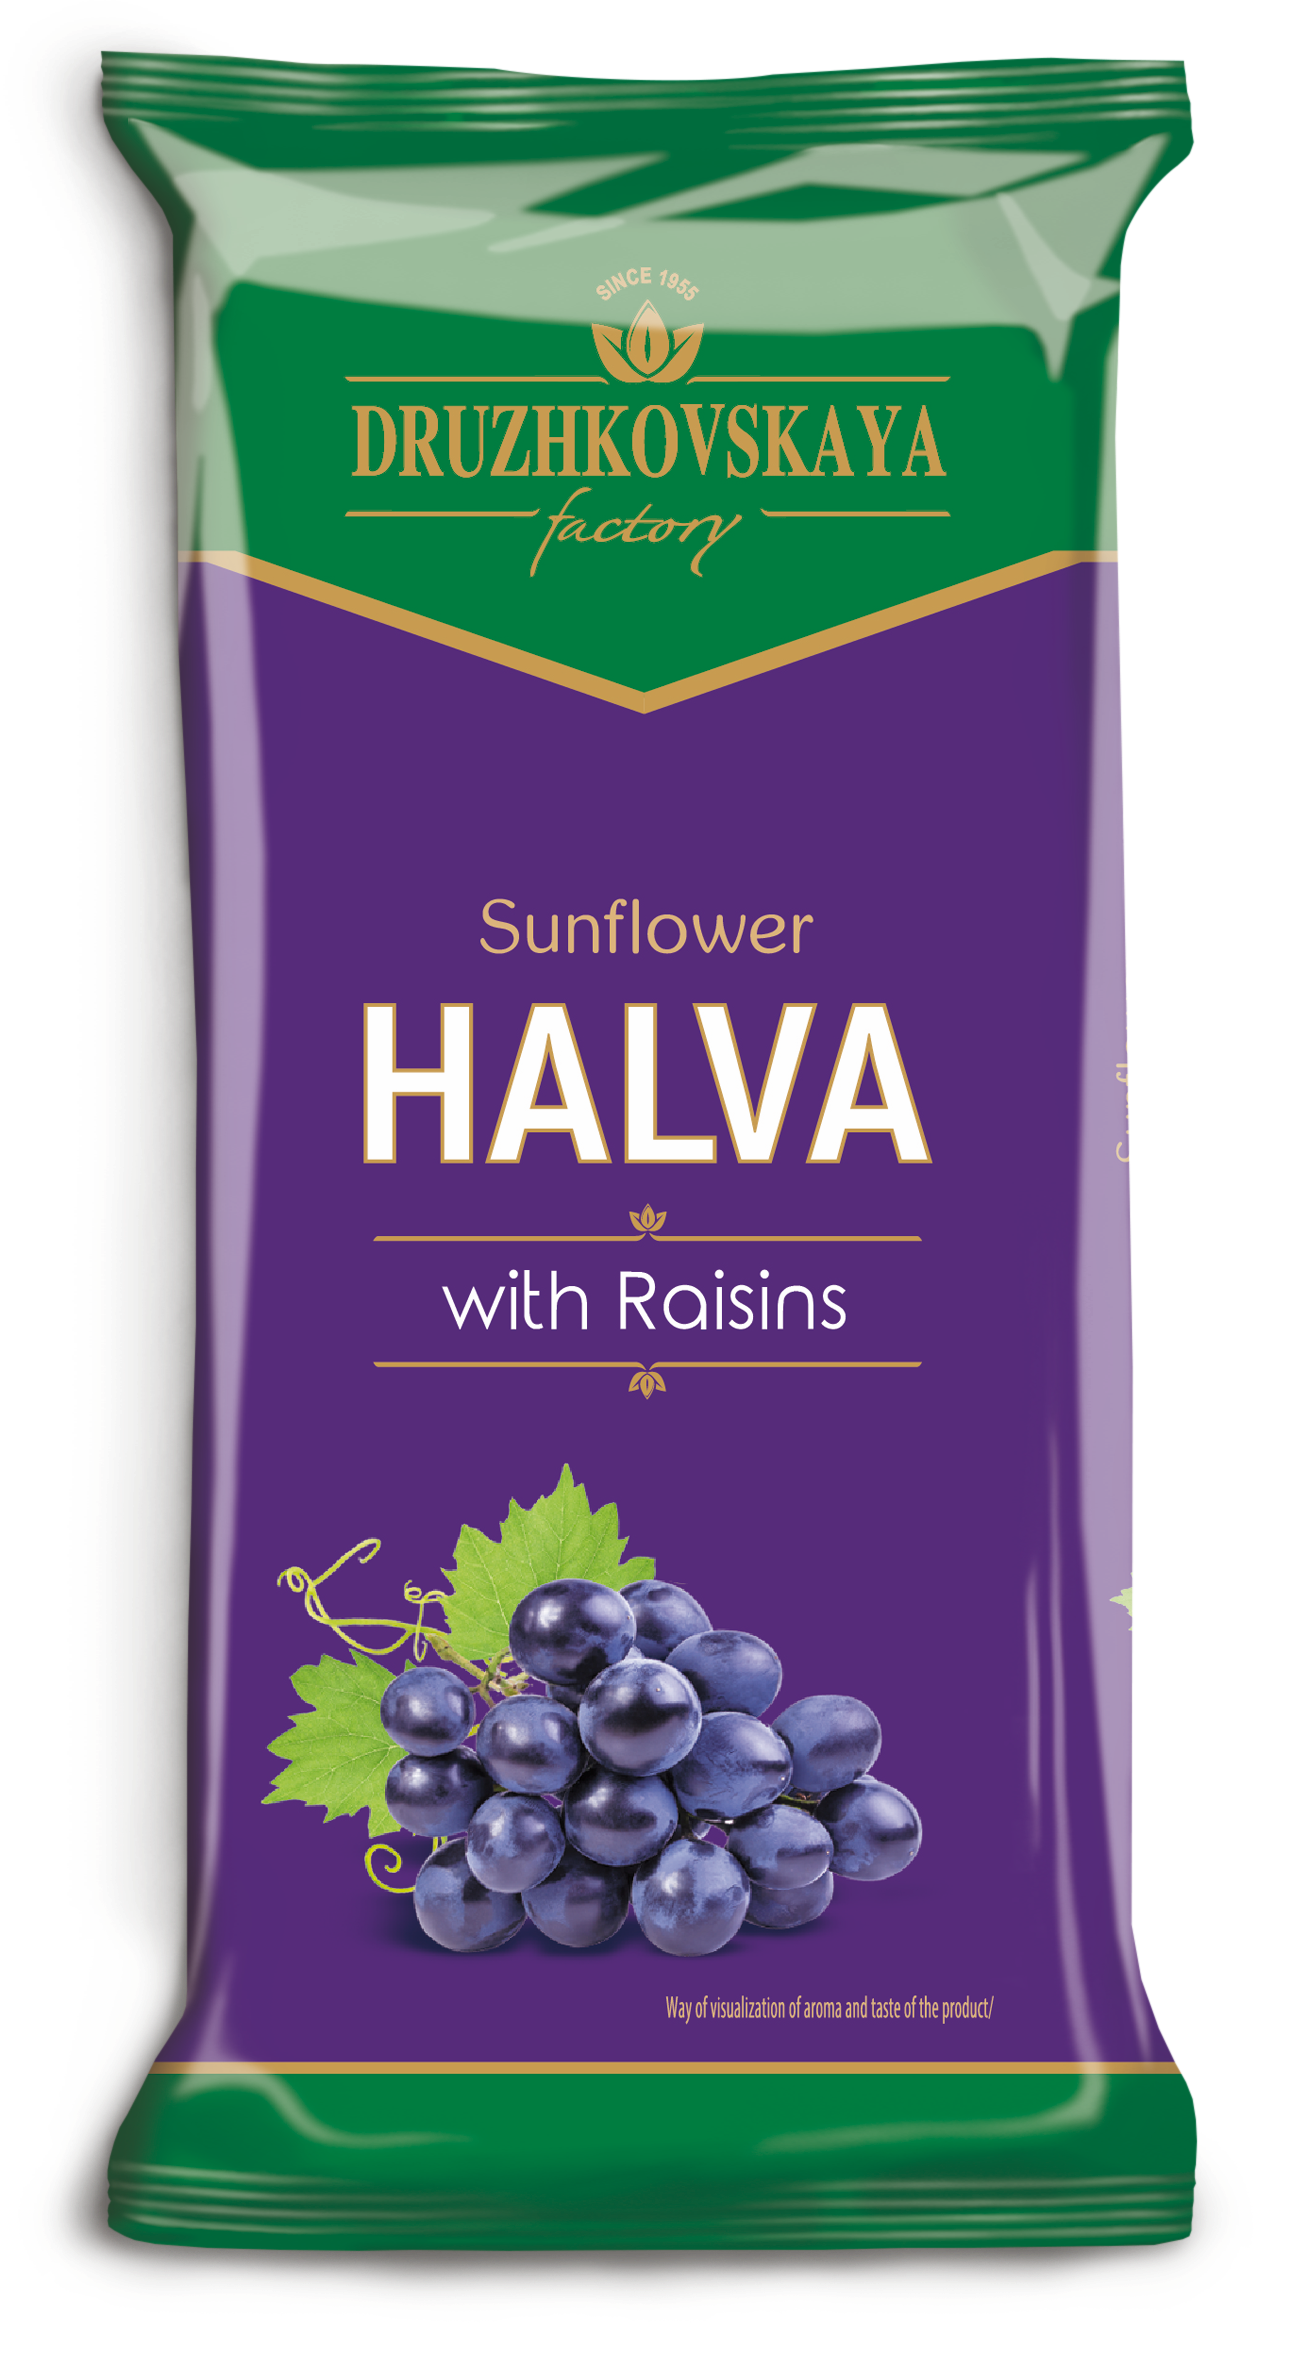 Sunflower Halva with Raisins Packed in Flow-pack, 350 g